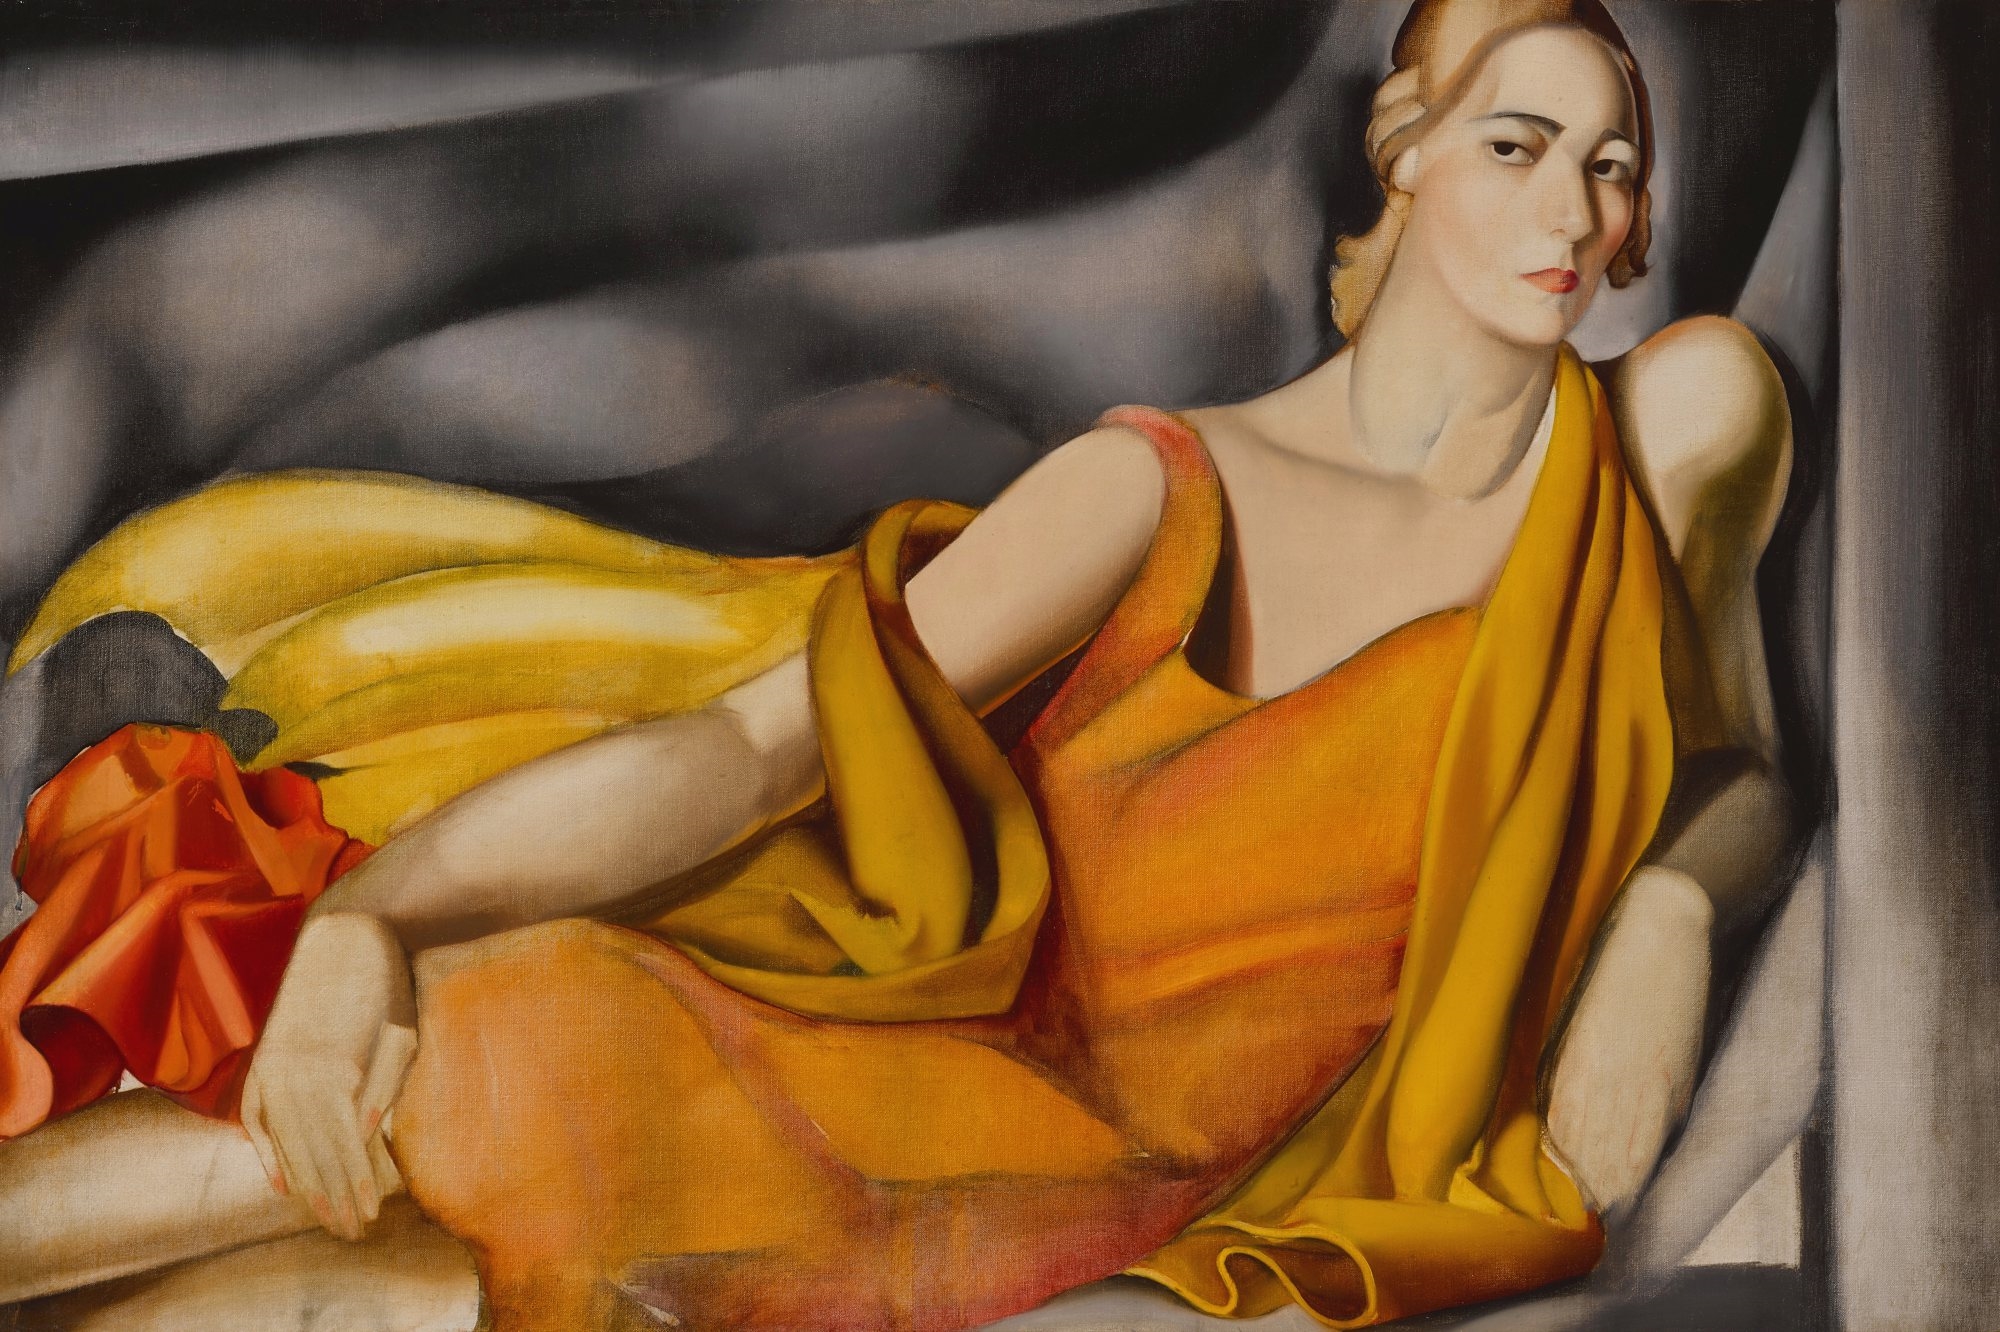 Femme à la robe jaune by Tamara de Lempicka, 1929